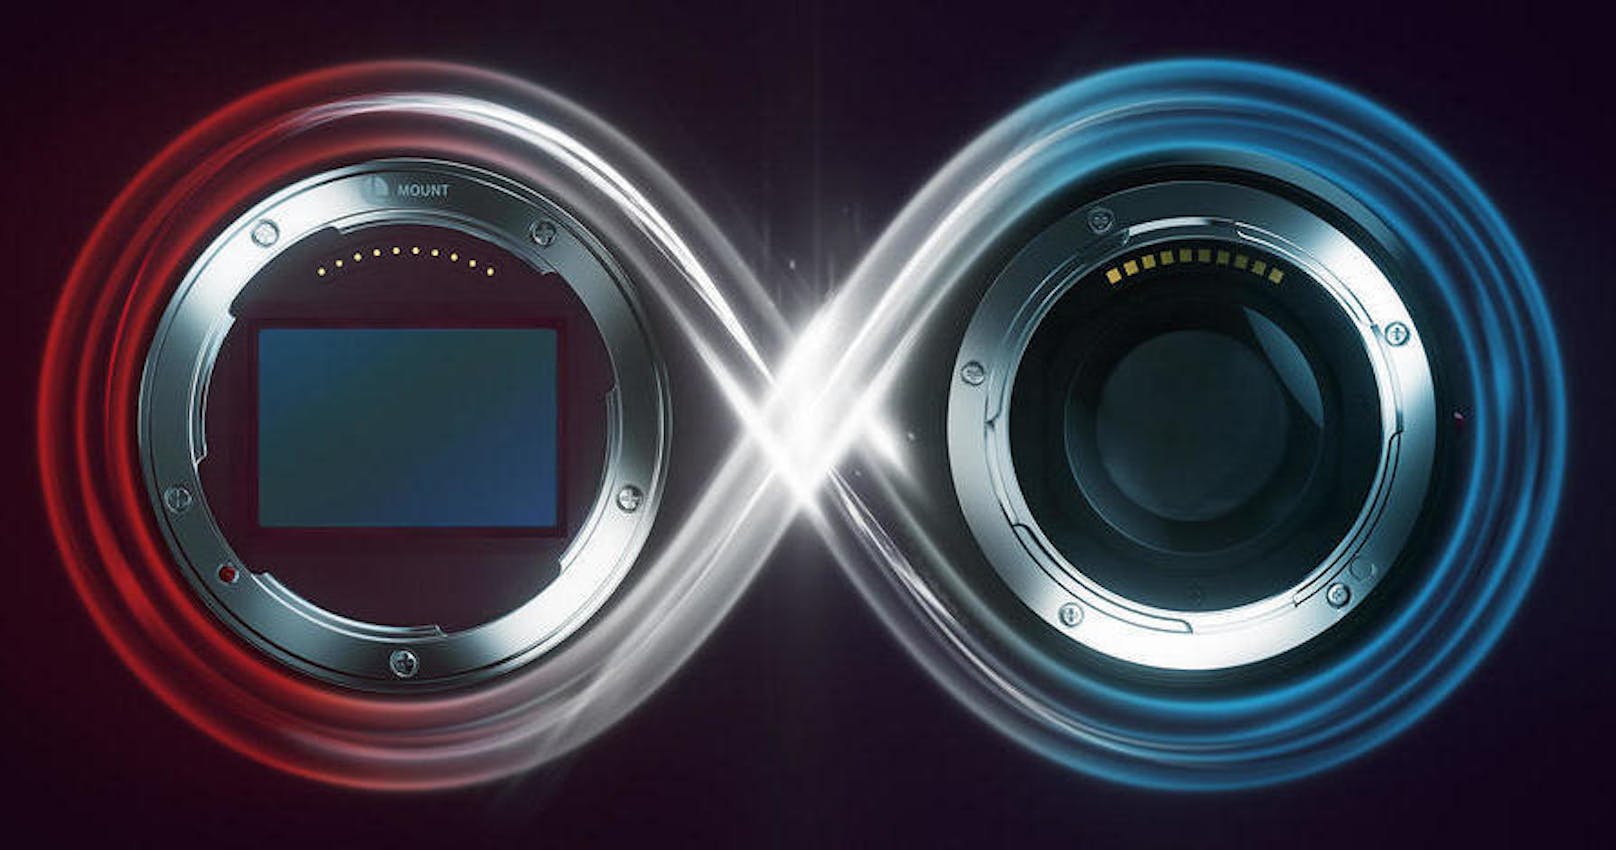 Panasonic, Leica und Sigma haben sich zur L-Mount-Allianz zusammengeschlossen mit dem Ziel, einen gemeinsamen Anschluss für Objektive zu nutzen. Das haben die drei Unternehmen im Zuge der Photokina, der weltweiten Leitmesse der Foto-, Video- und Imaging-Branche, bekannt gegeben. Panasonic und Sigma werden künftig den sogenannten L-Mount-Standard von Leica für ihre eigenen Entwicklungen nutzen. Bei L-Mount (zu Deutsch L-Bajonett) handelt es sich um ein spiegelloses Kamera-System für Vollformat- und APS-C-Kameras. Das ermöglicht es Kunden, in Zukunft eine flexiblere Auswahl an Kameras und Objektiven zu treffen, ohne sich dabei auf einen einzigen Hersteller festlegen zu müssen.